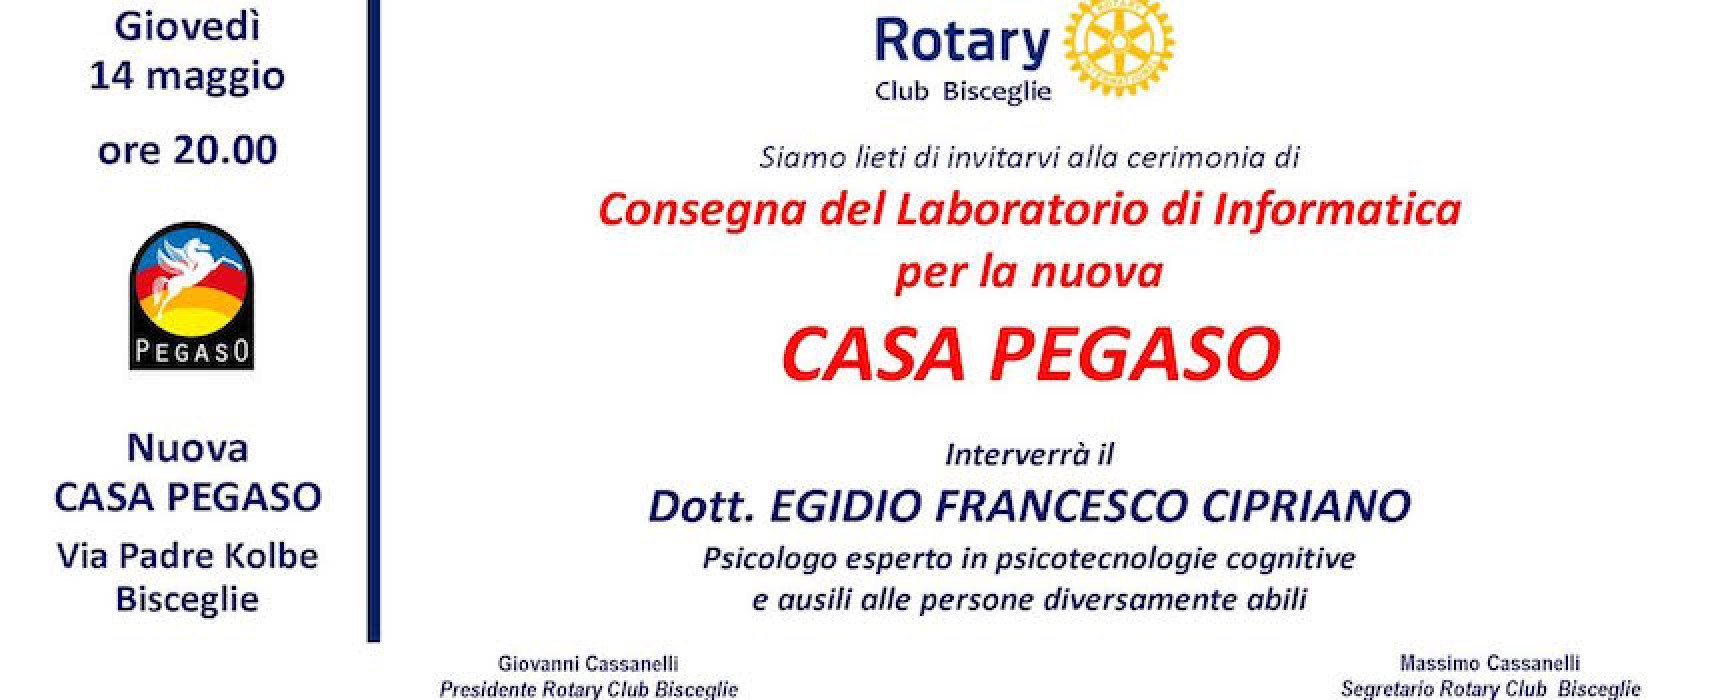 Rotary Club, domani la cerimonia di consegna del laboratorio informatico alla Casa Pegaso